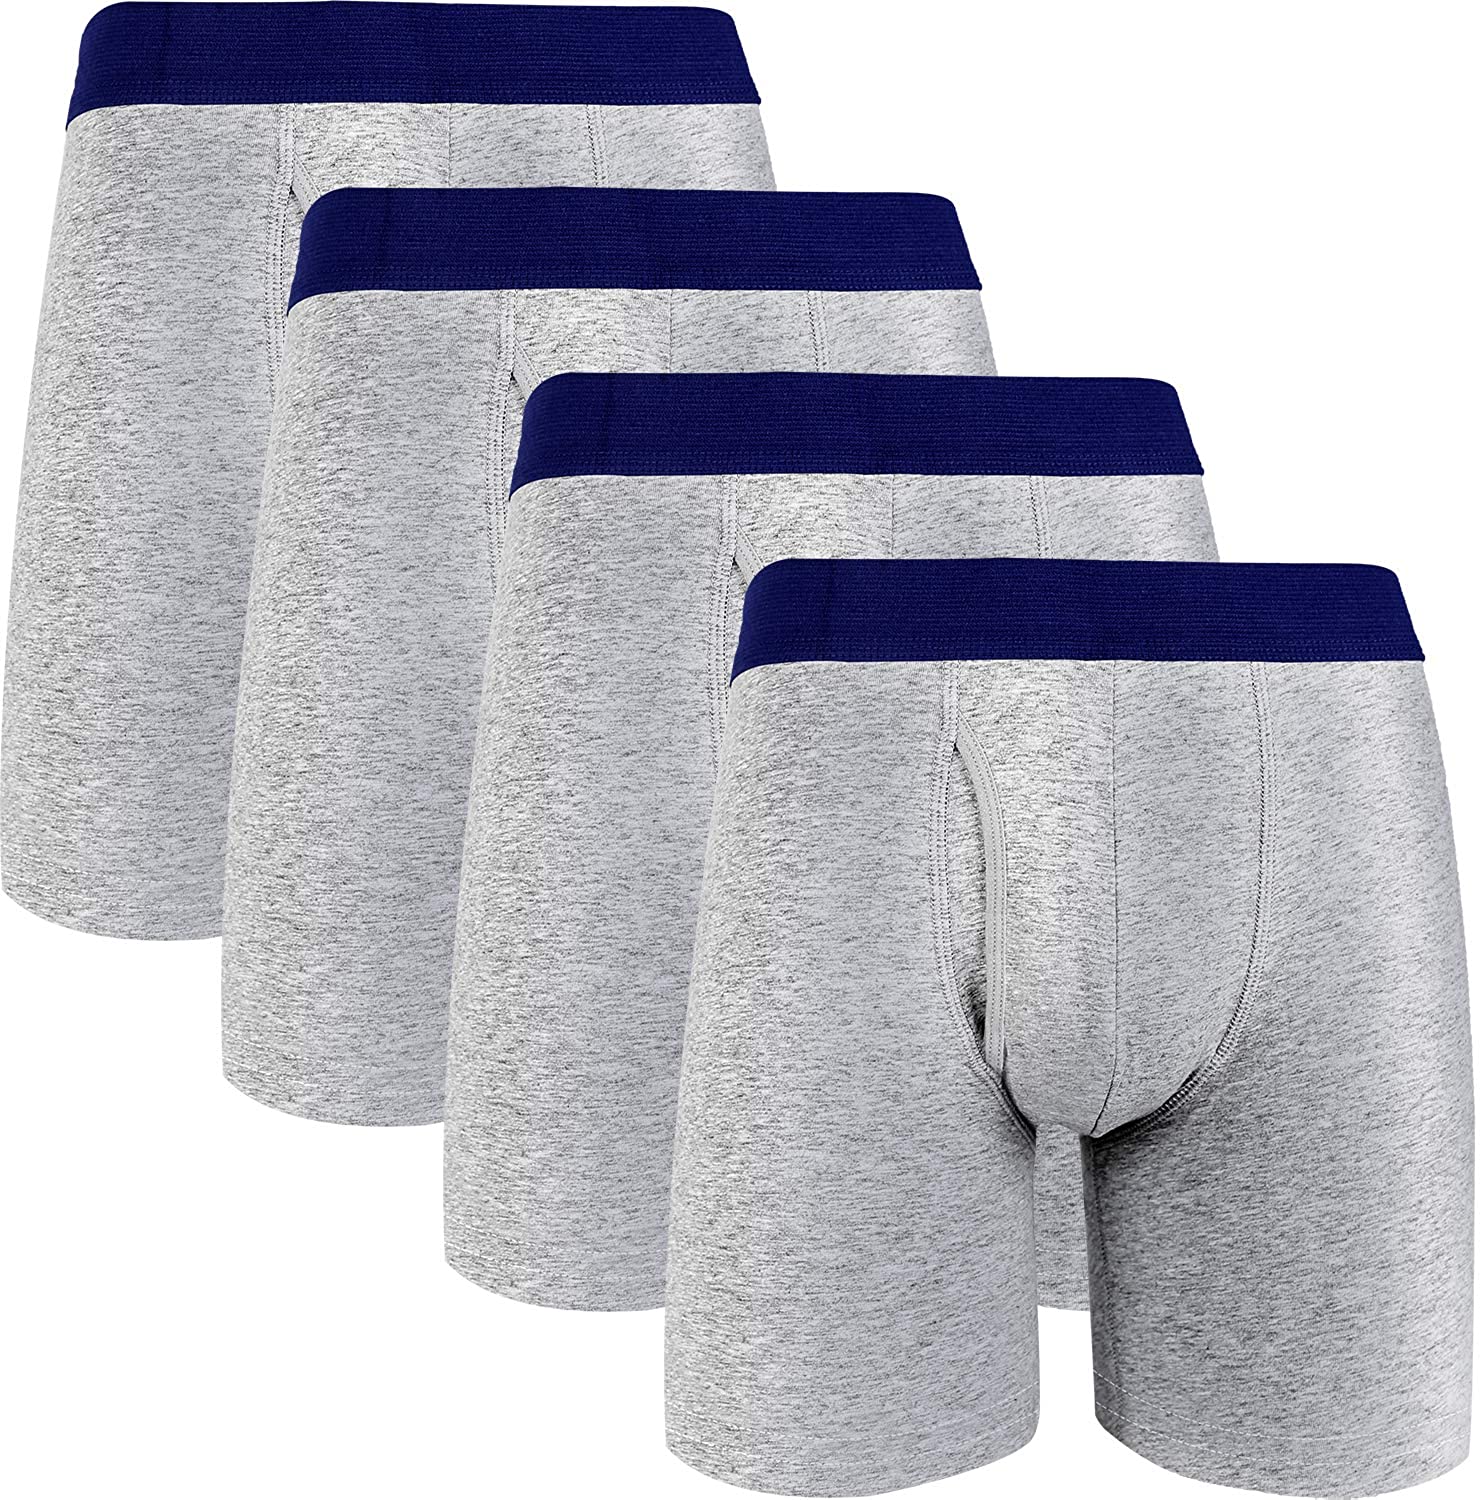 LYYTHAVON Men's Boxer Briefs Cotton Tag-Free Underwear Boxer Briefs 